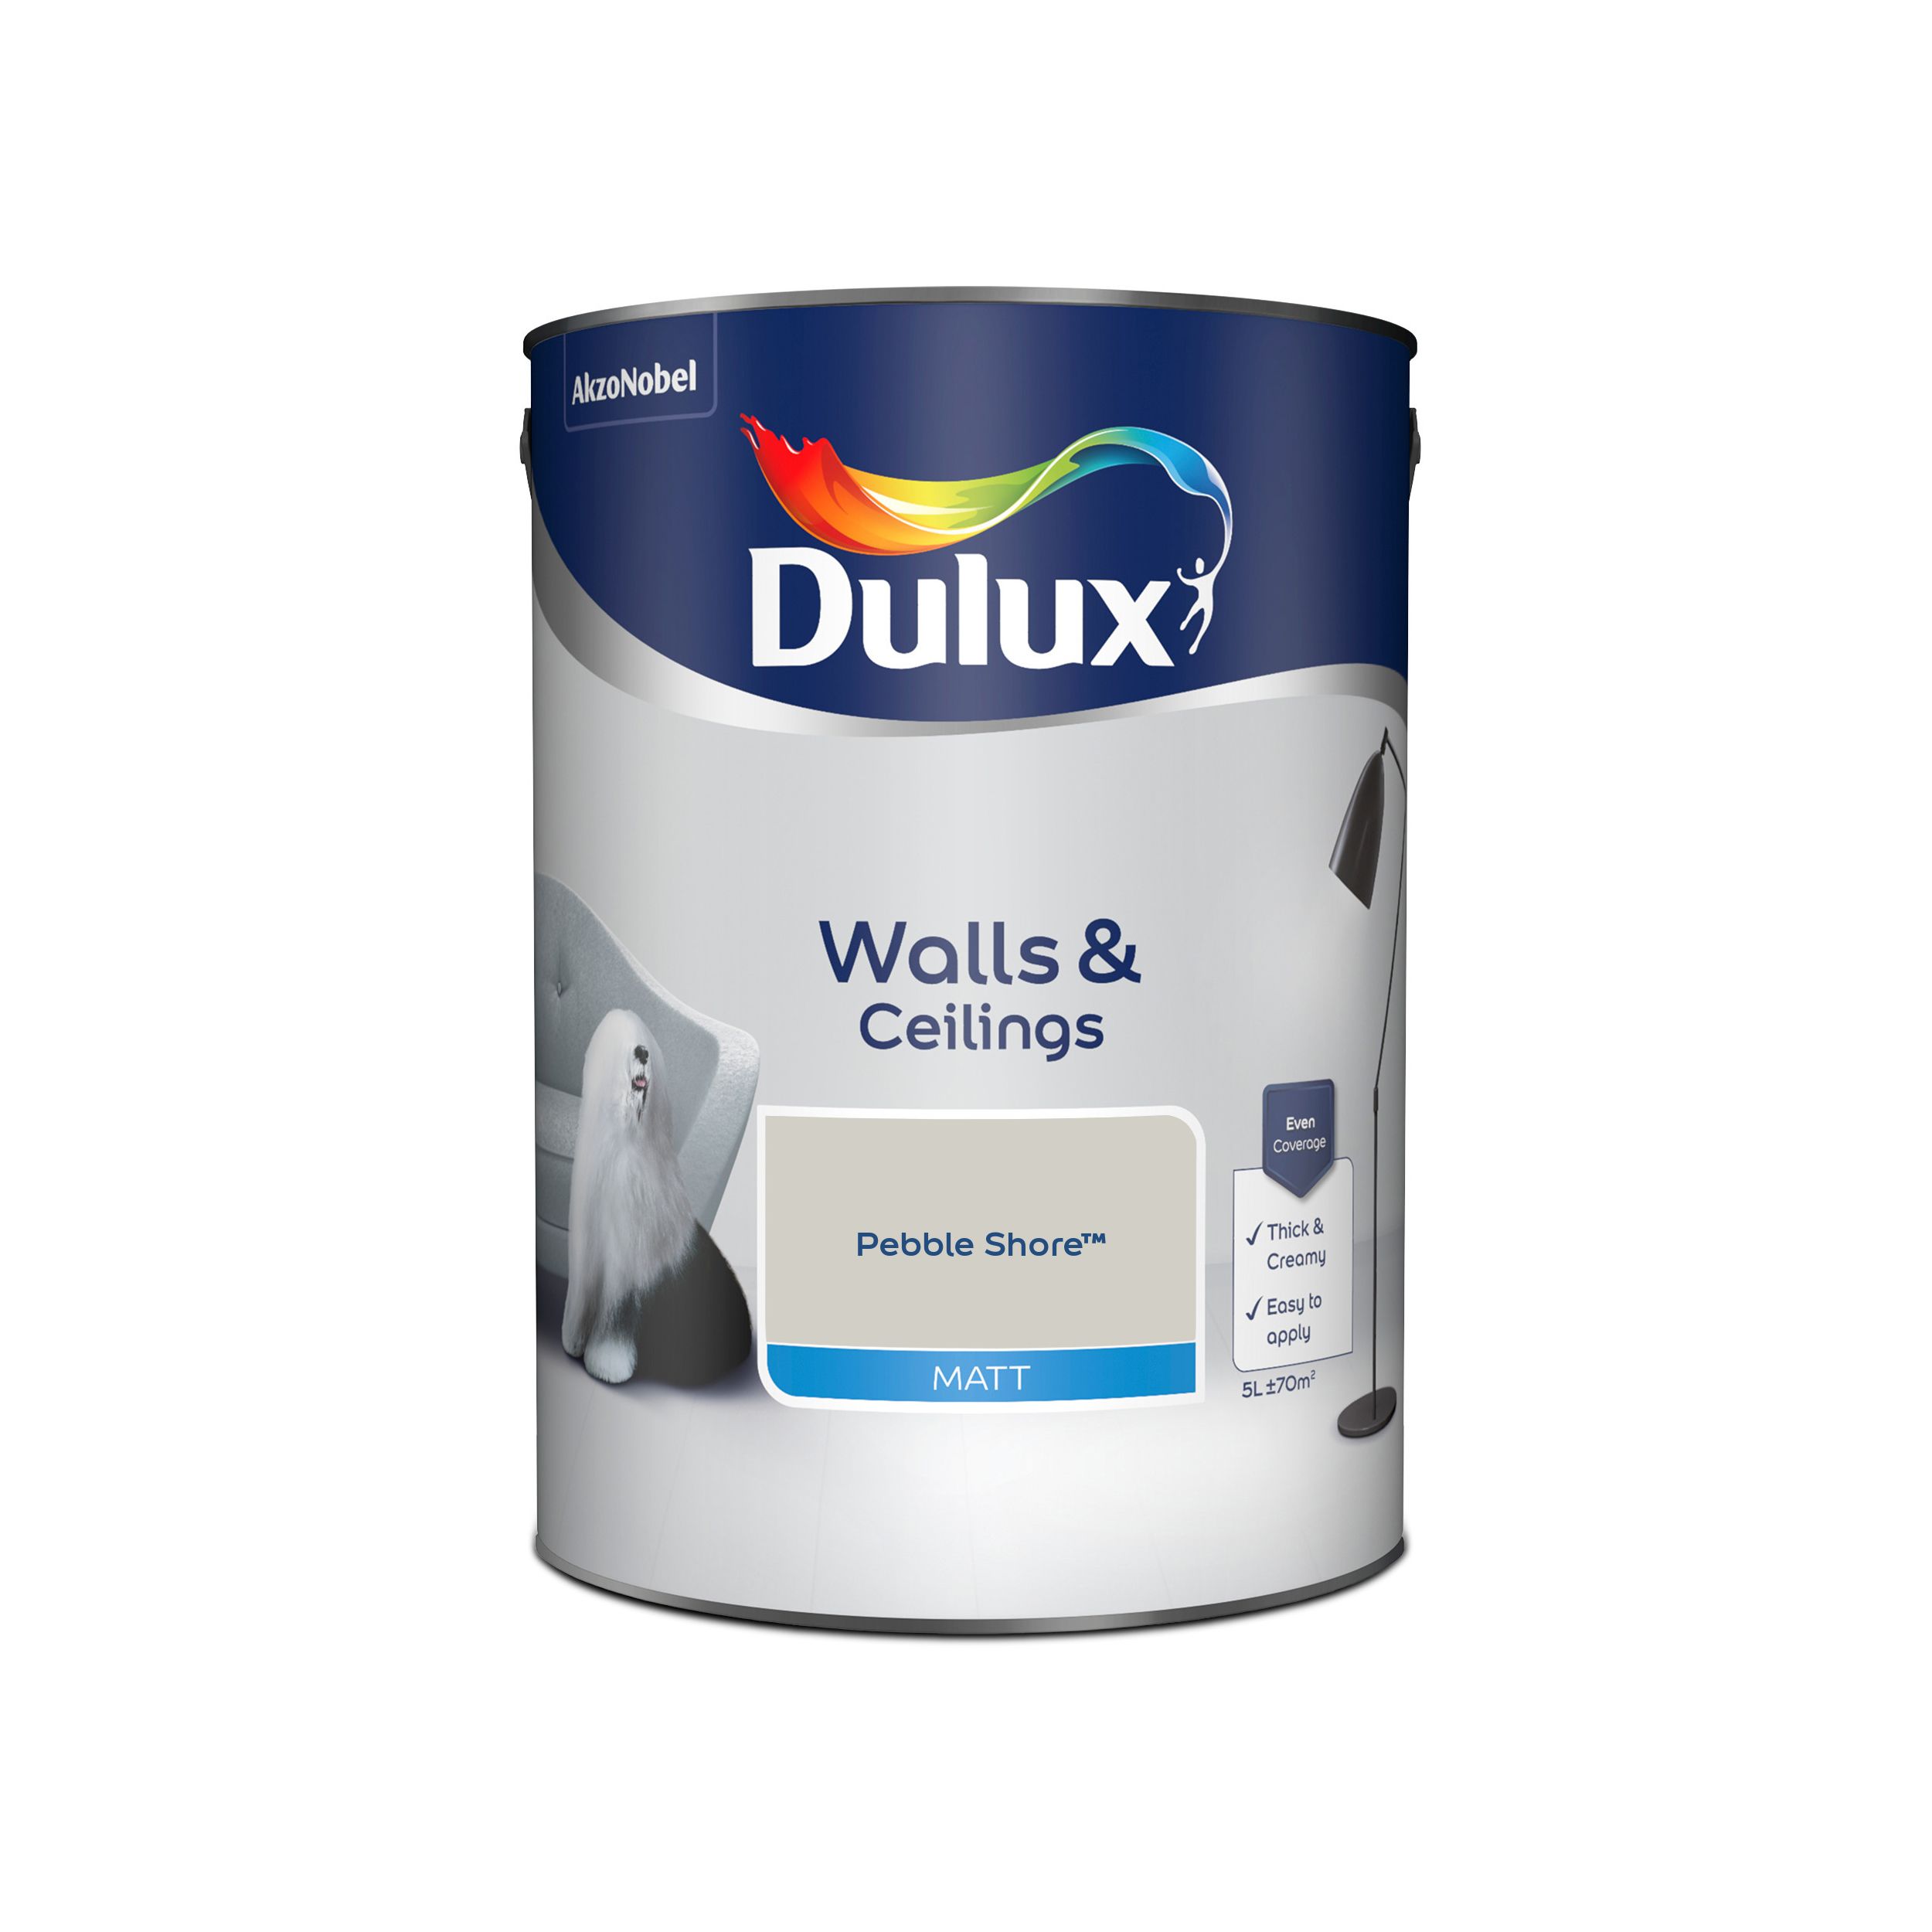 Dulux Walls & ceilings Pebble shore Matt Emulsion paint, 5L